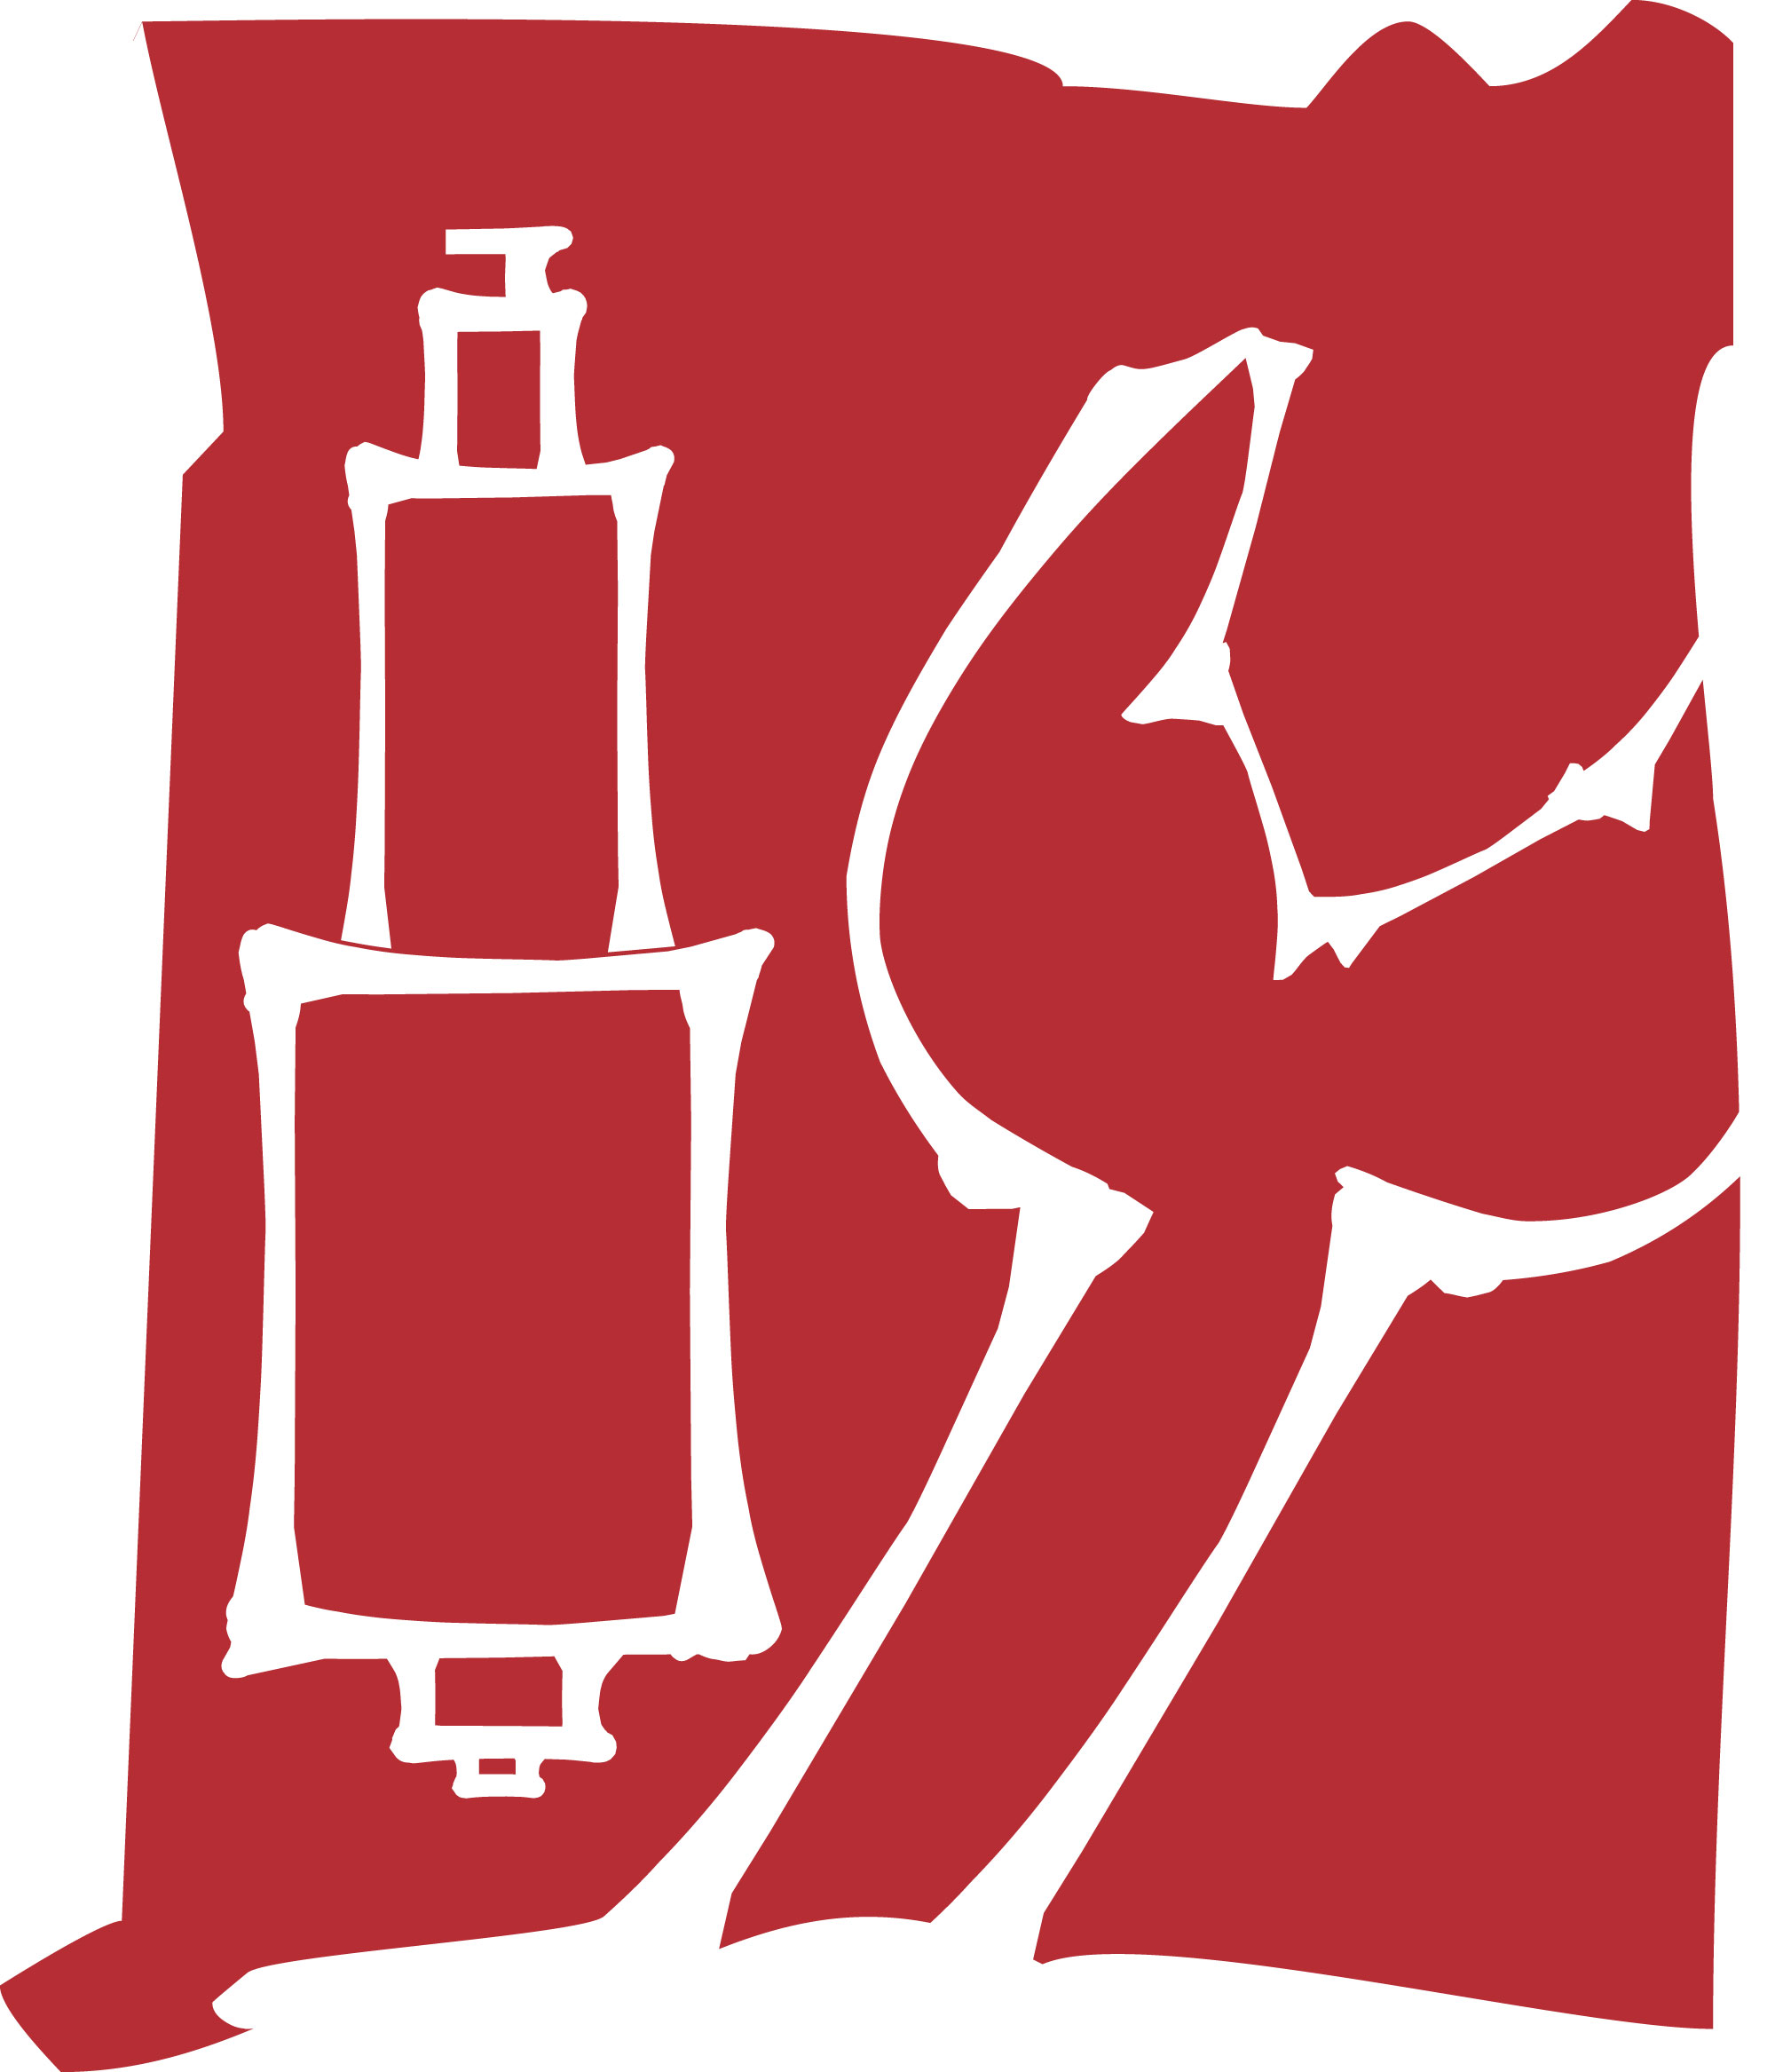 wagenschmiede-eifel - niederbettingen - kfz - werkstatt - logo